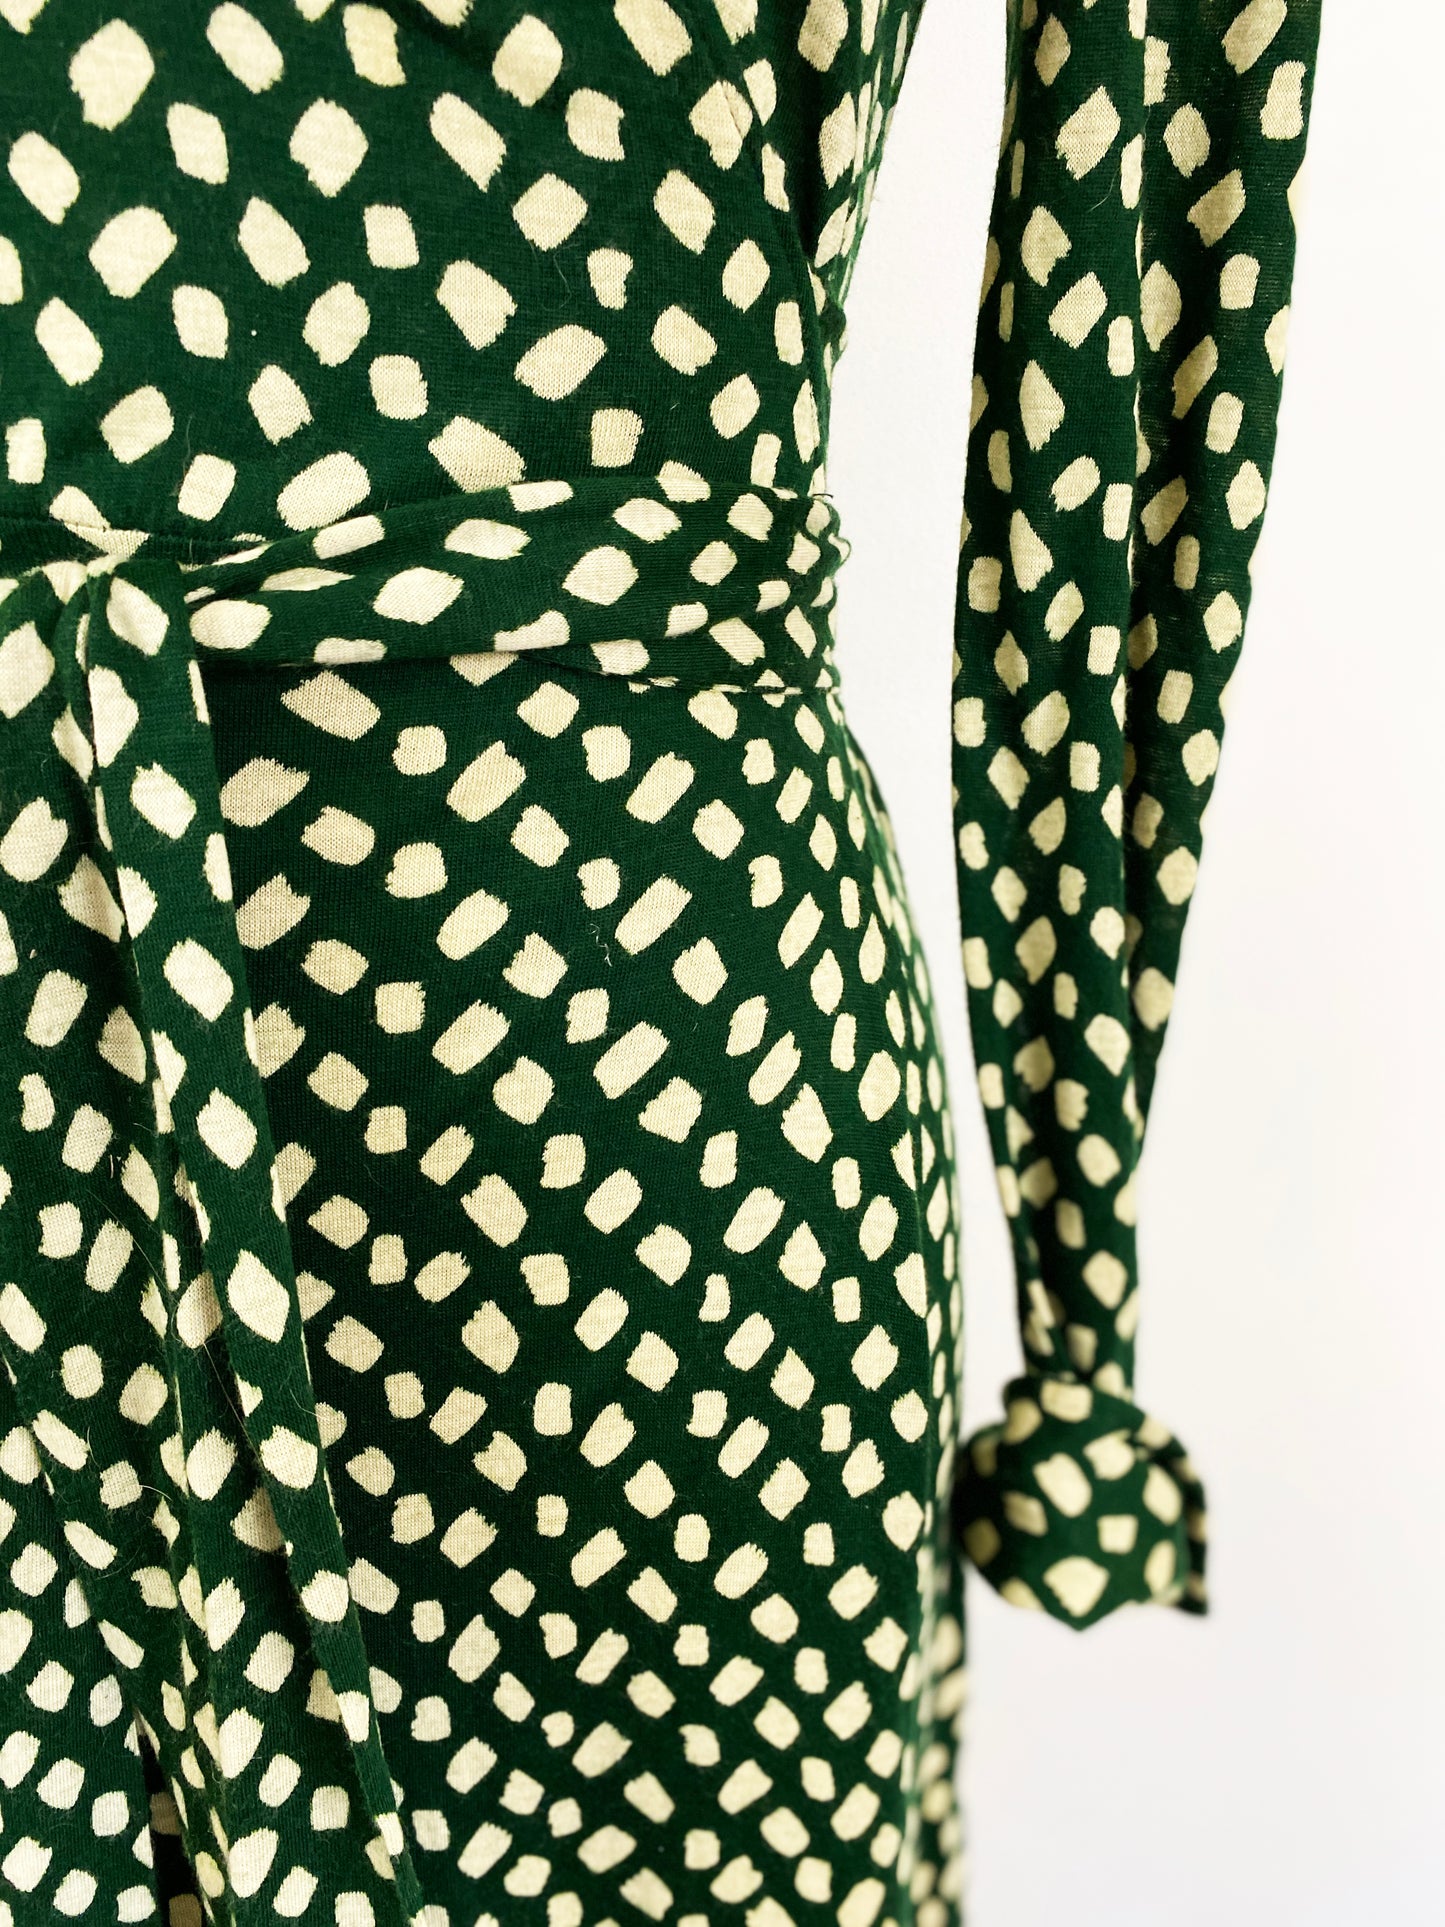 1970s Diane Von Furstenberg Cotton Polka Dot Jersey Wrap Dress Green Cream A-line Midi Dress Designer DVF / Medium